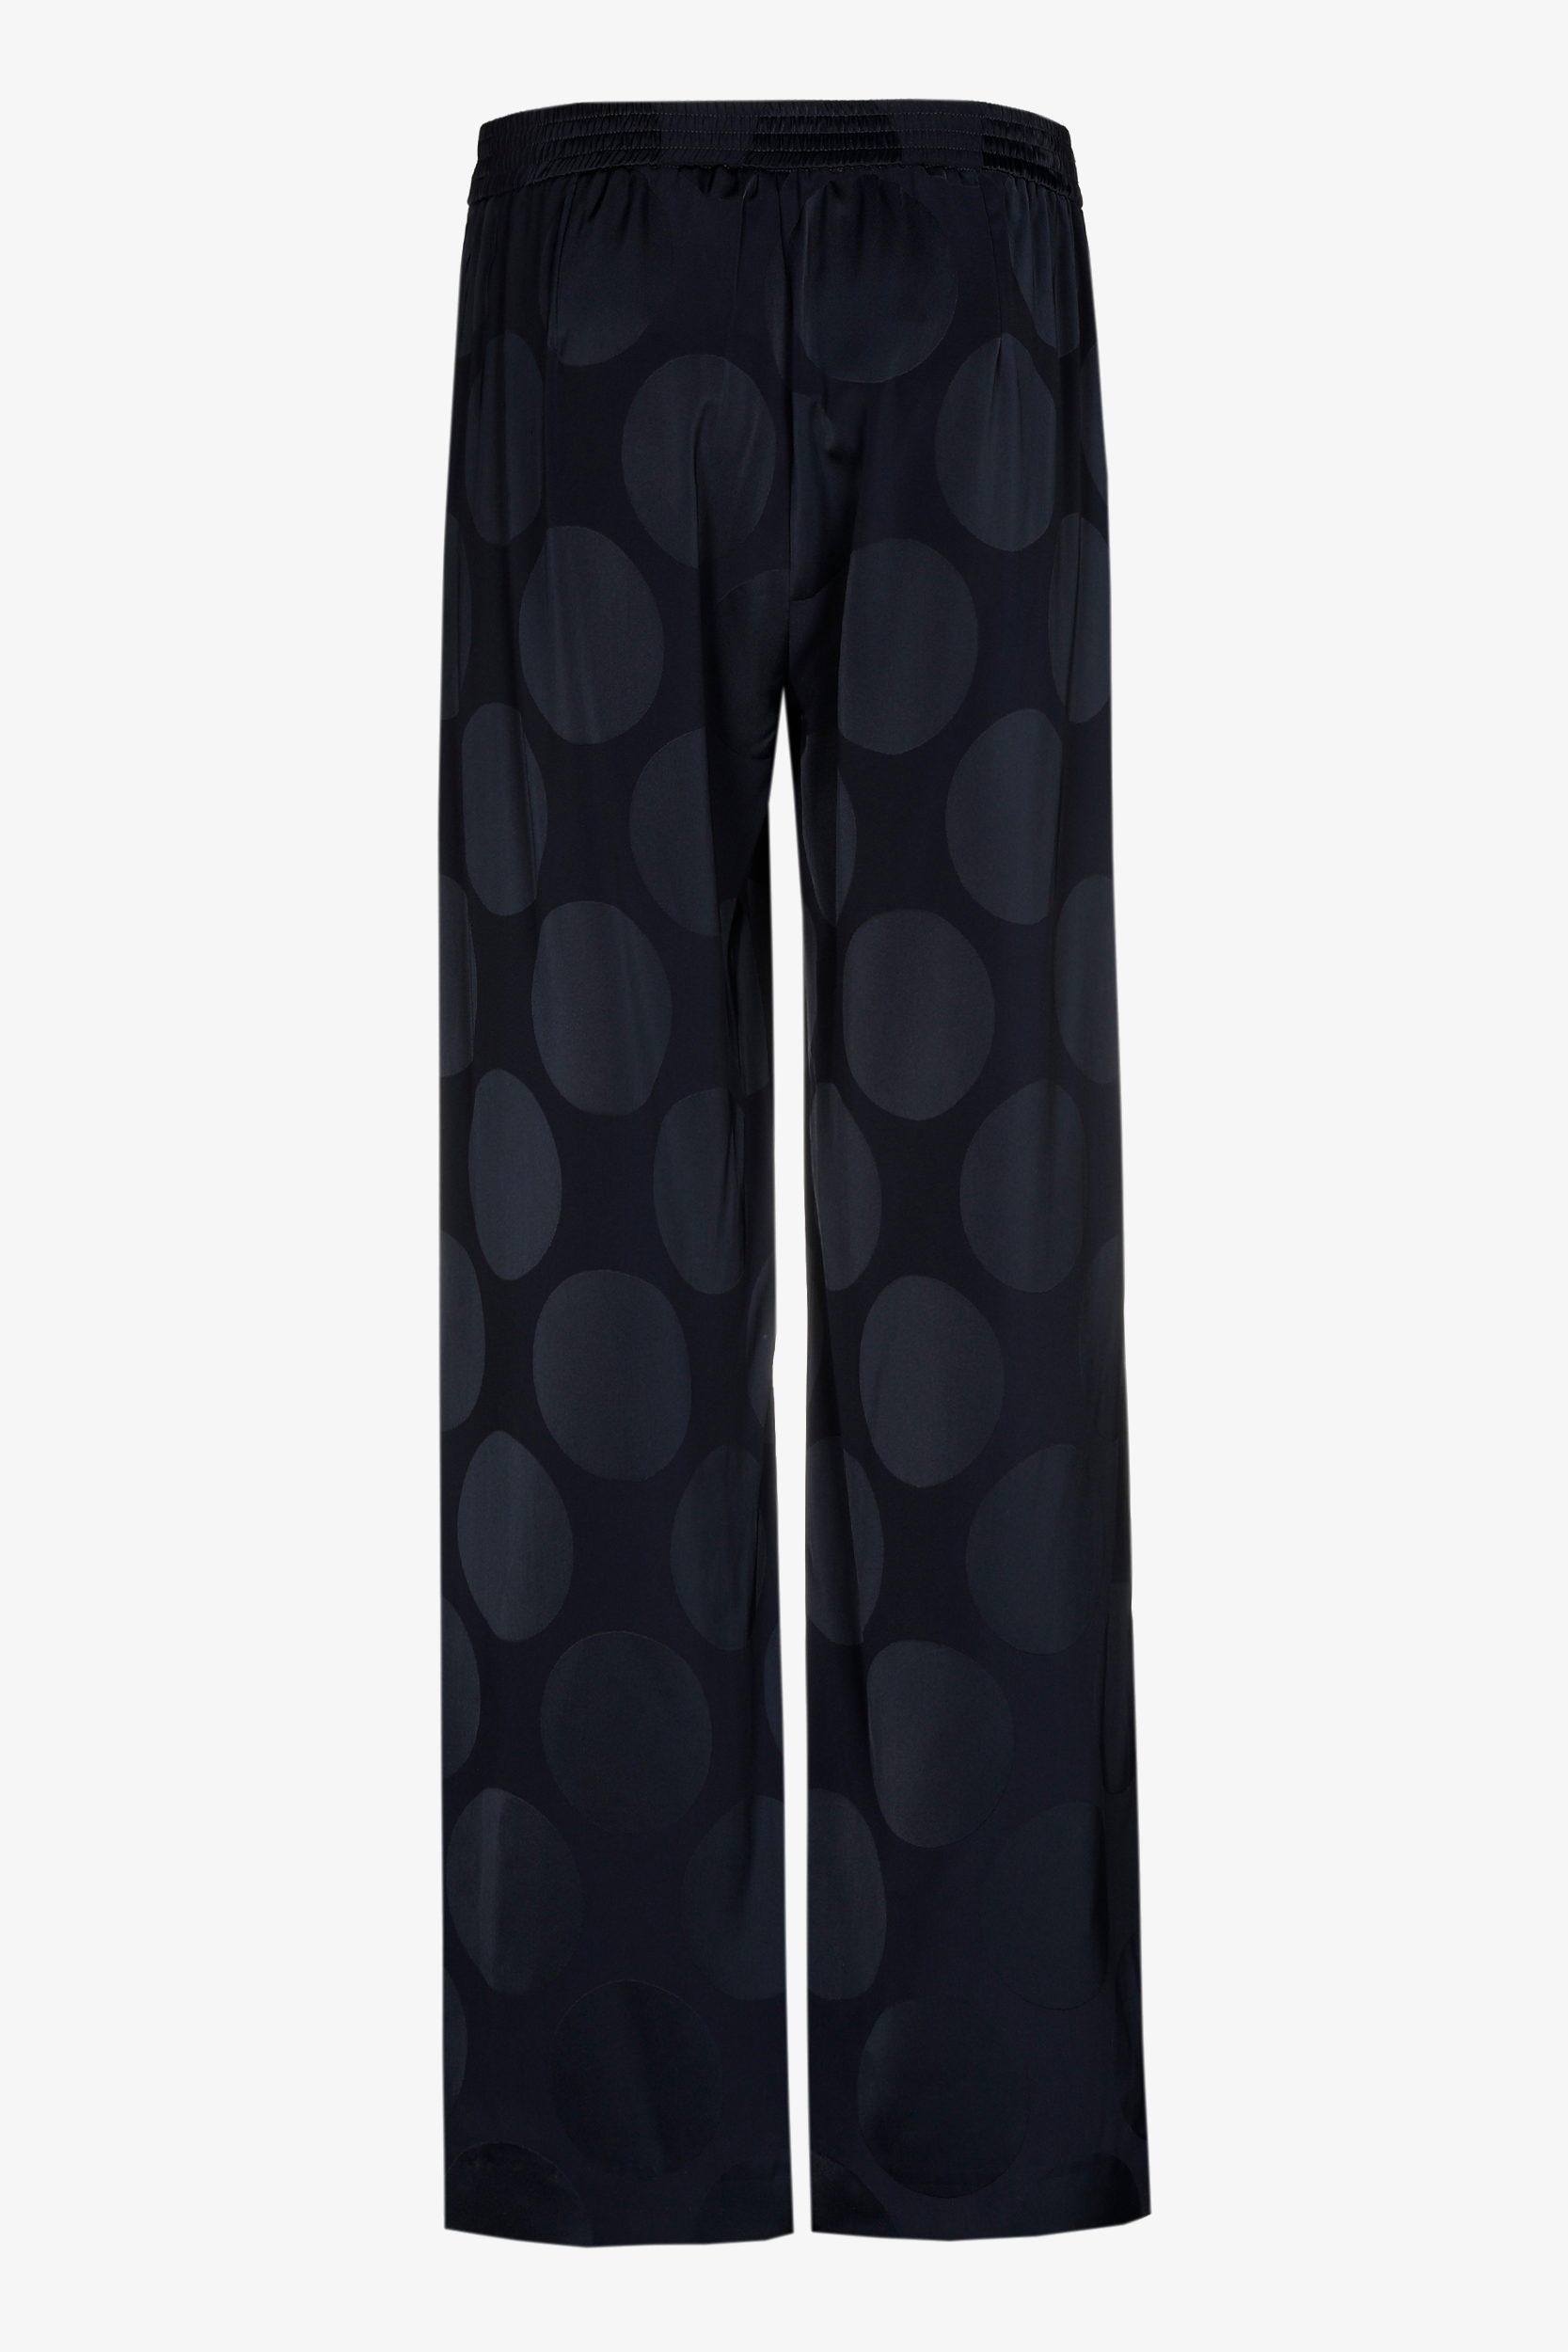 Matt trousers with shiny pattern